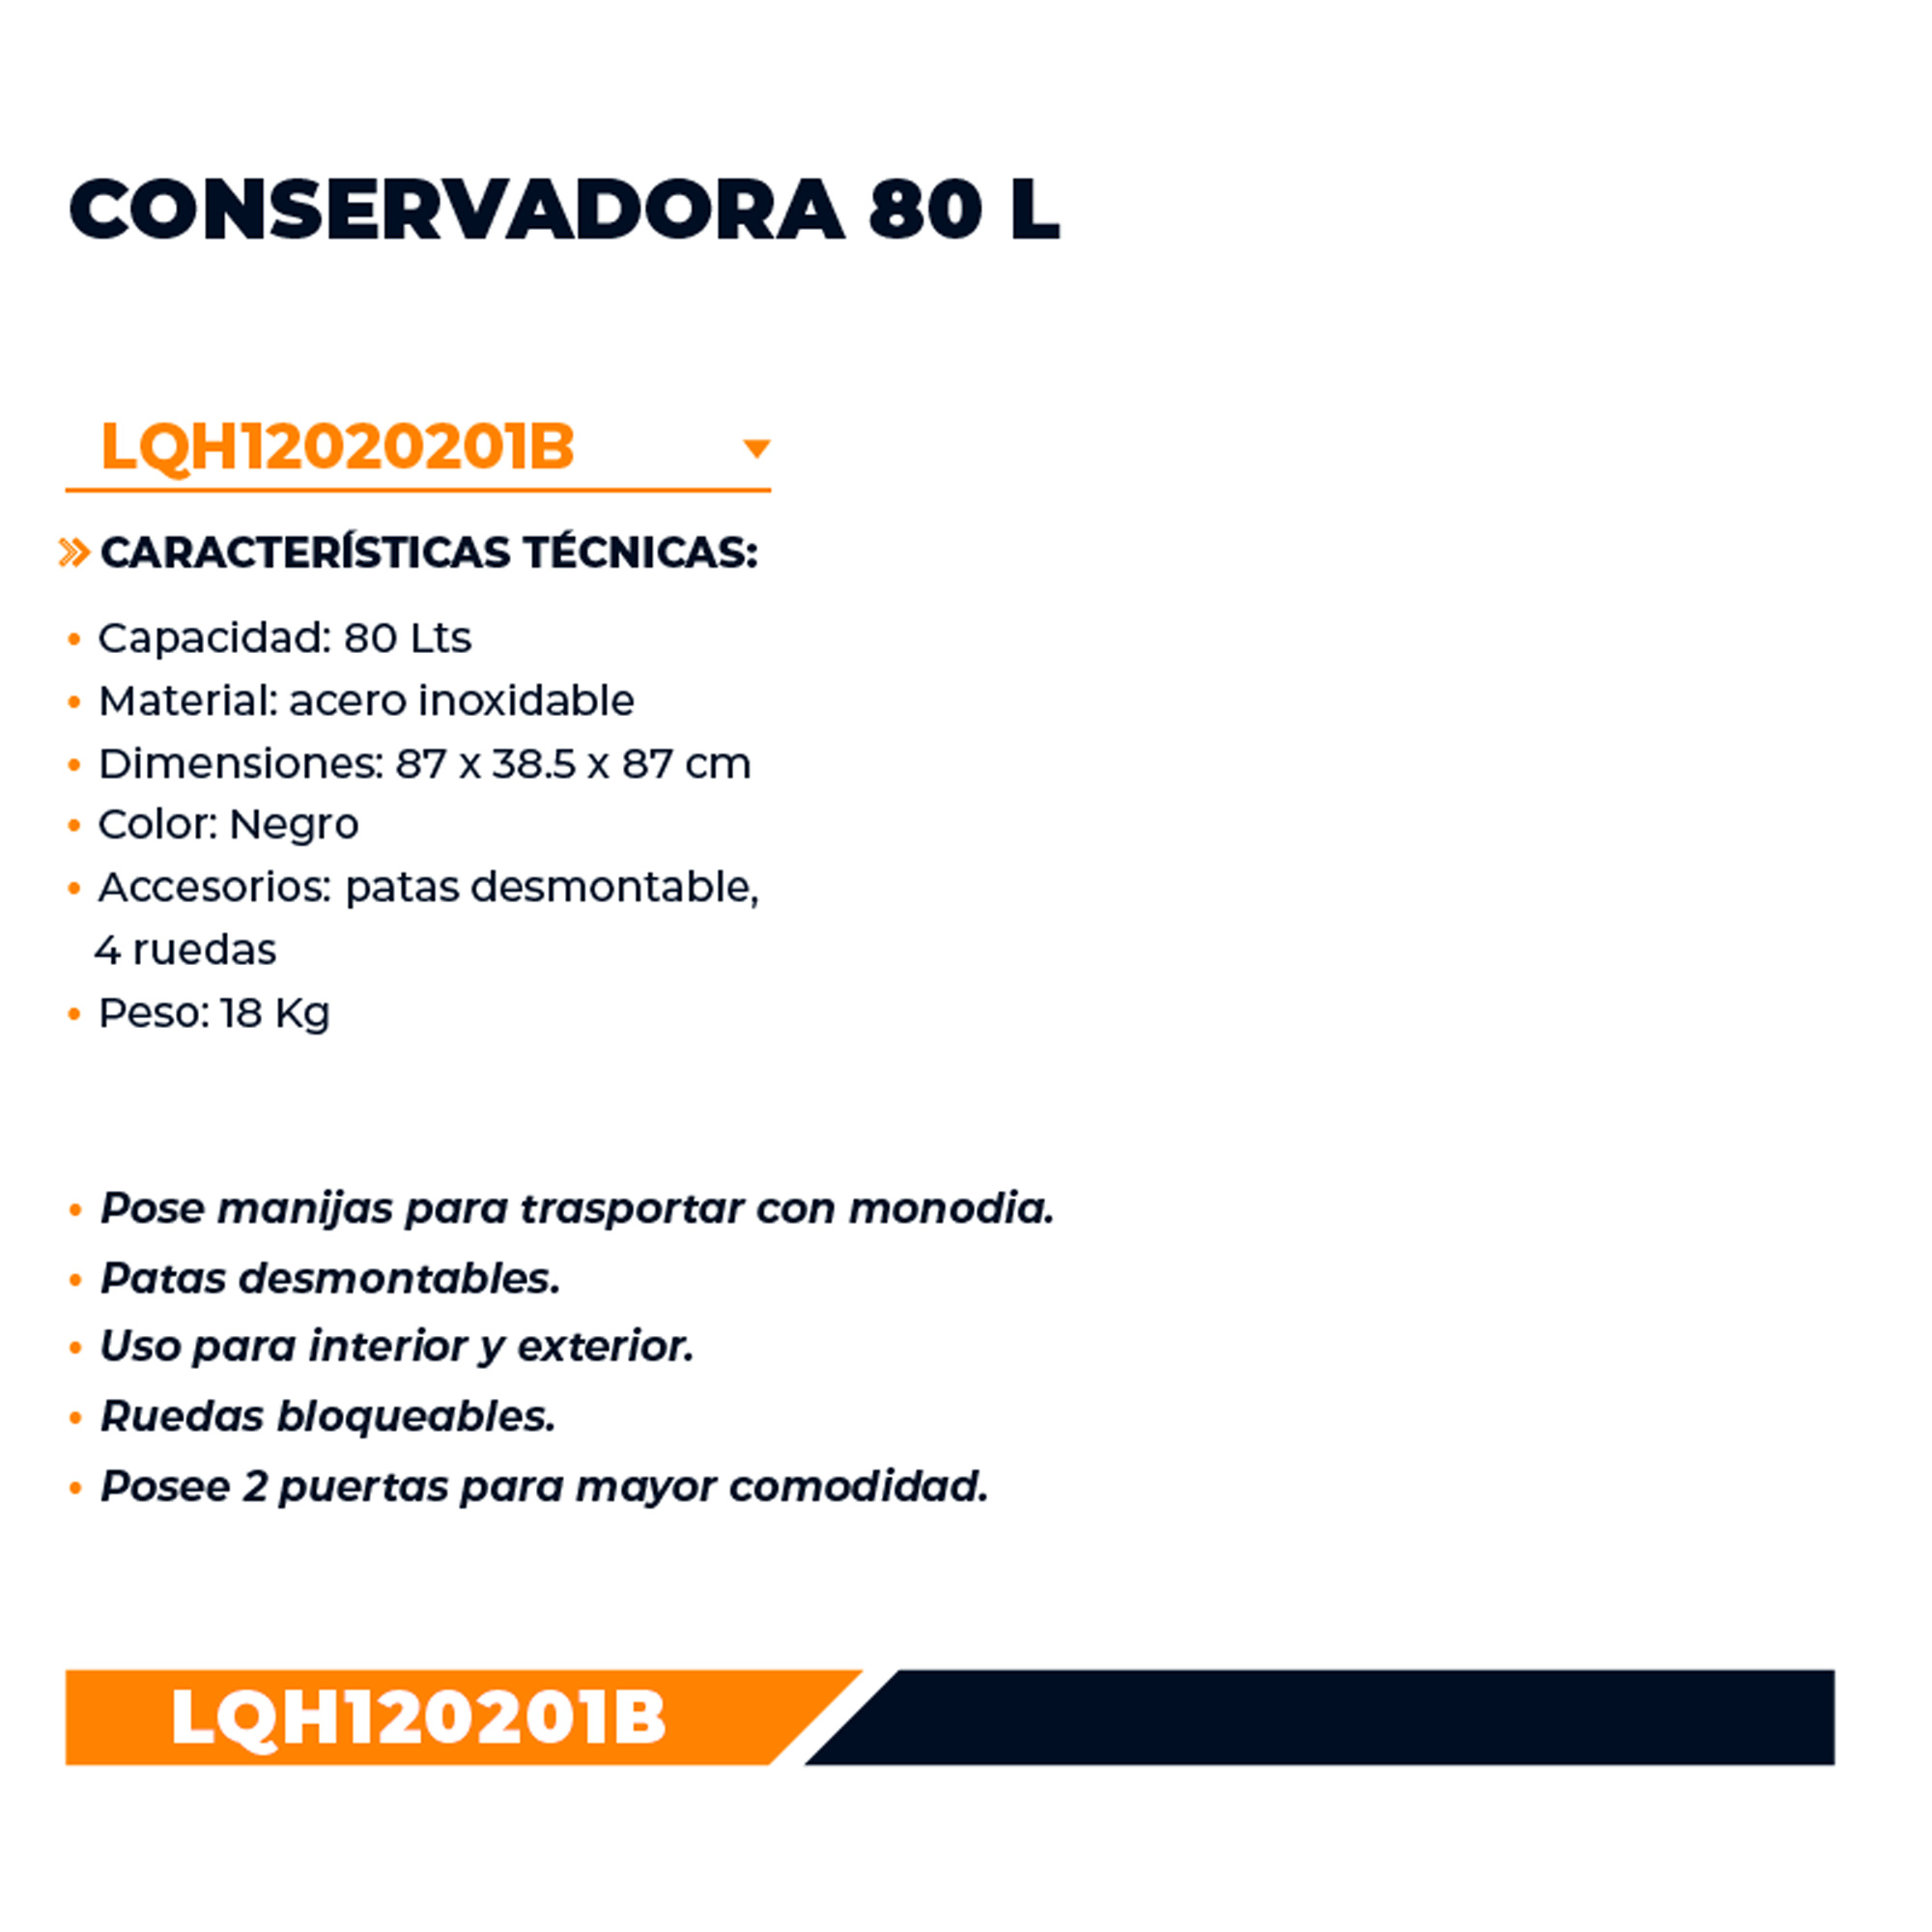 LQH120201B LUSQTOFF                                                     | CONSERVADORA TÉRMICA 80 LITROS ACERO INOX LUSQTOFF NEGRA                                                                                                                                                                                                  